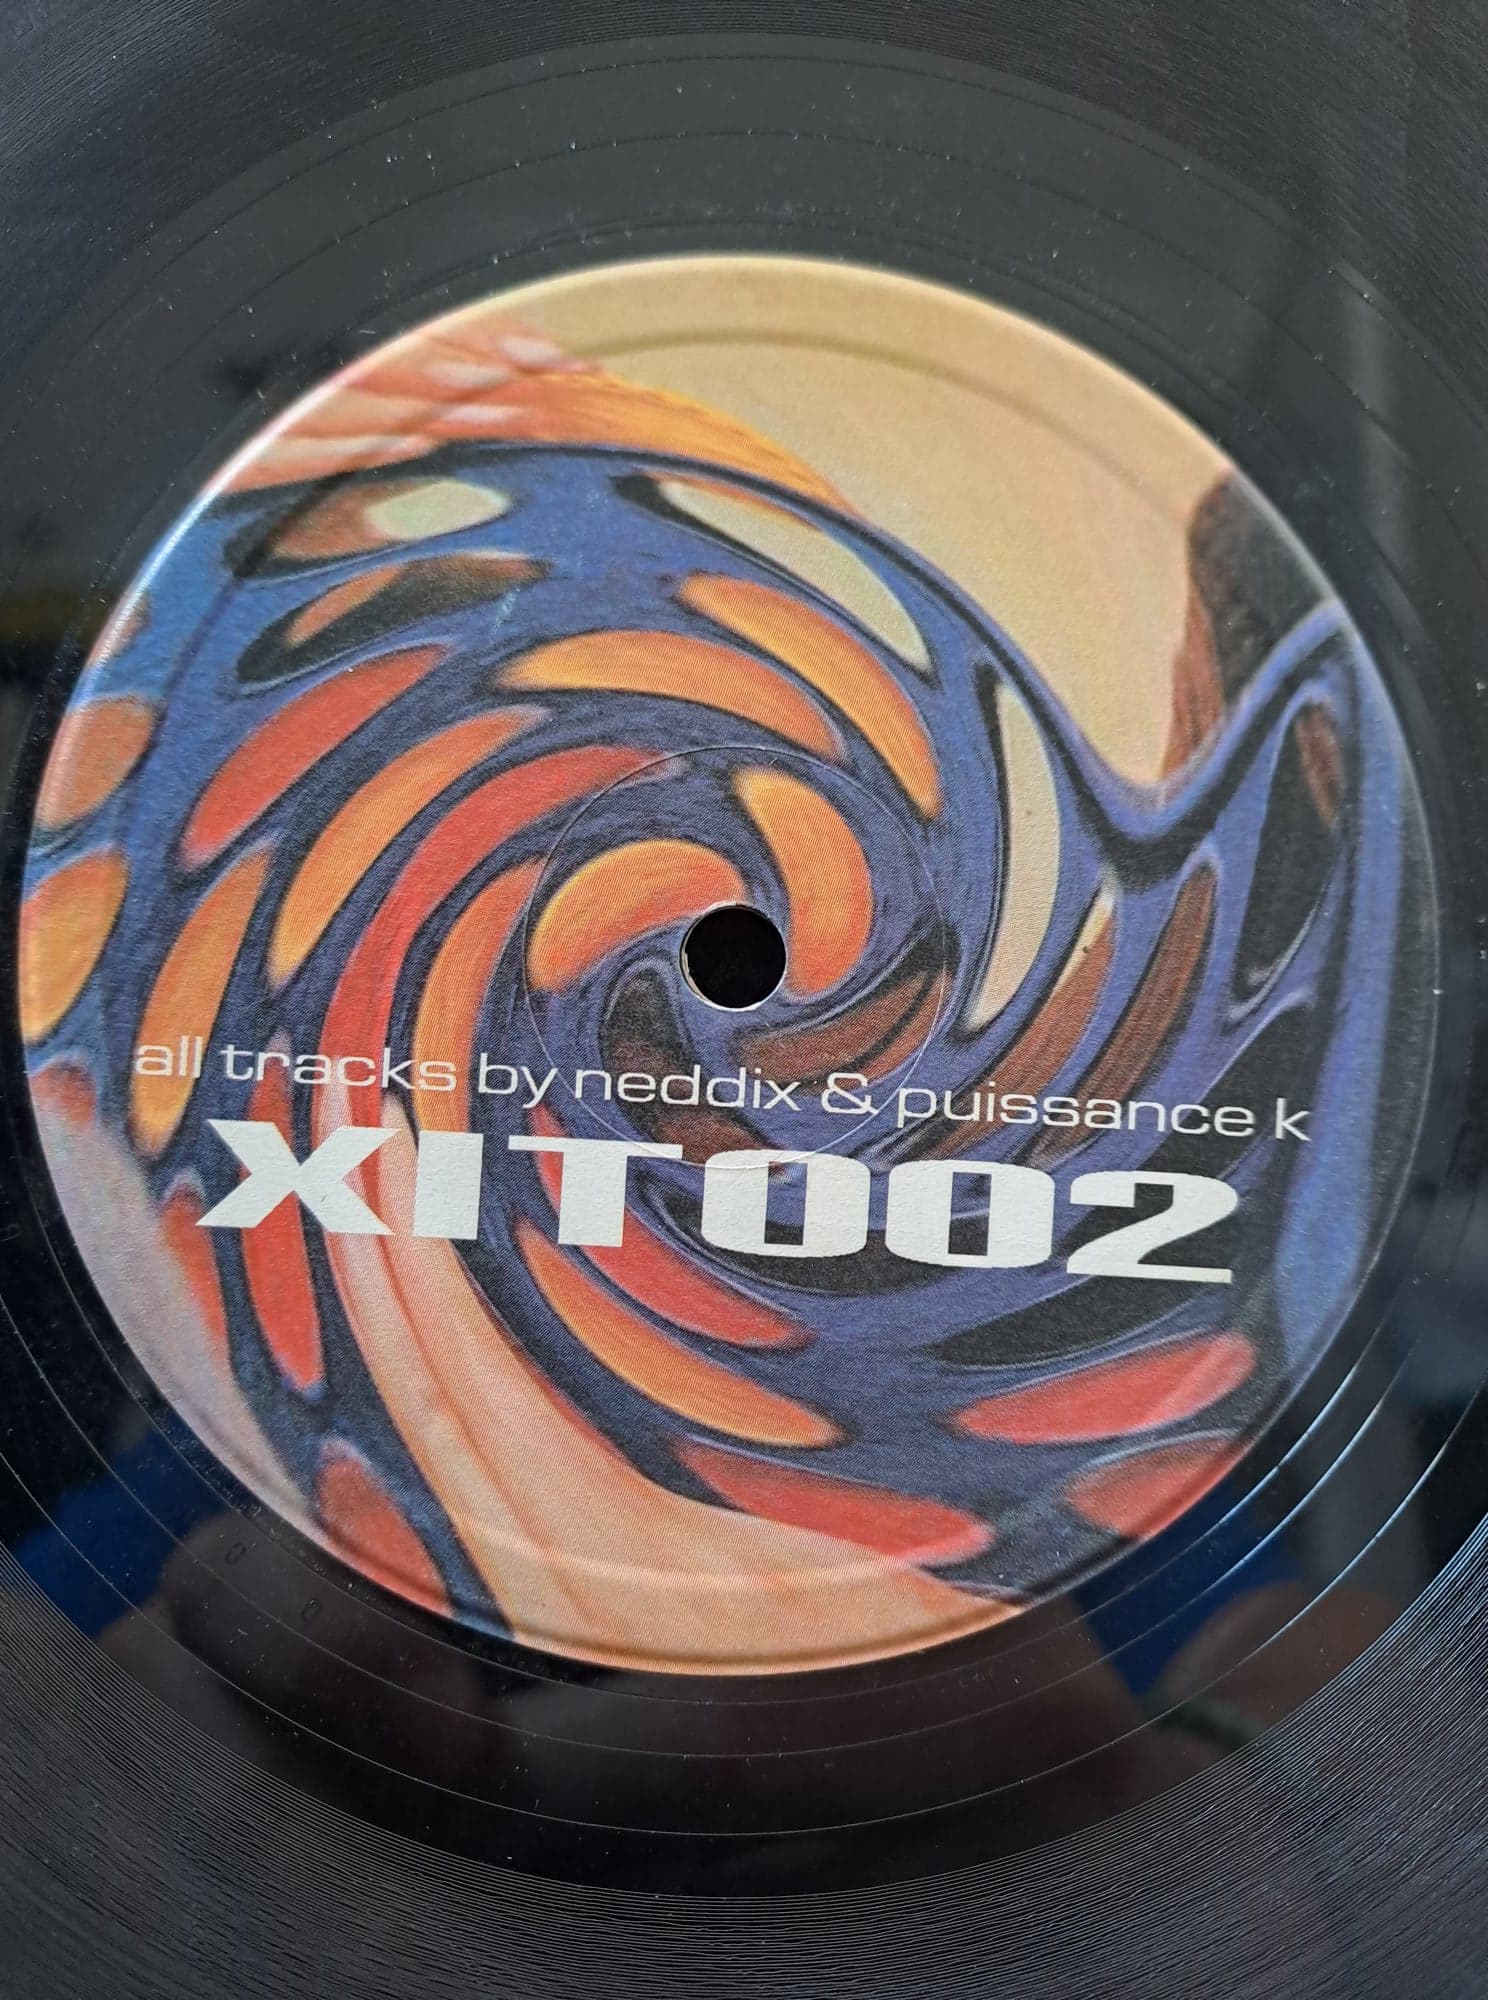 Kronic 03 - vinyle freetekno